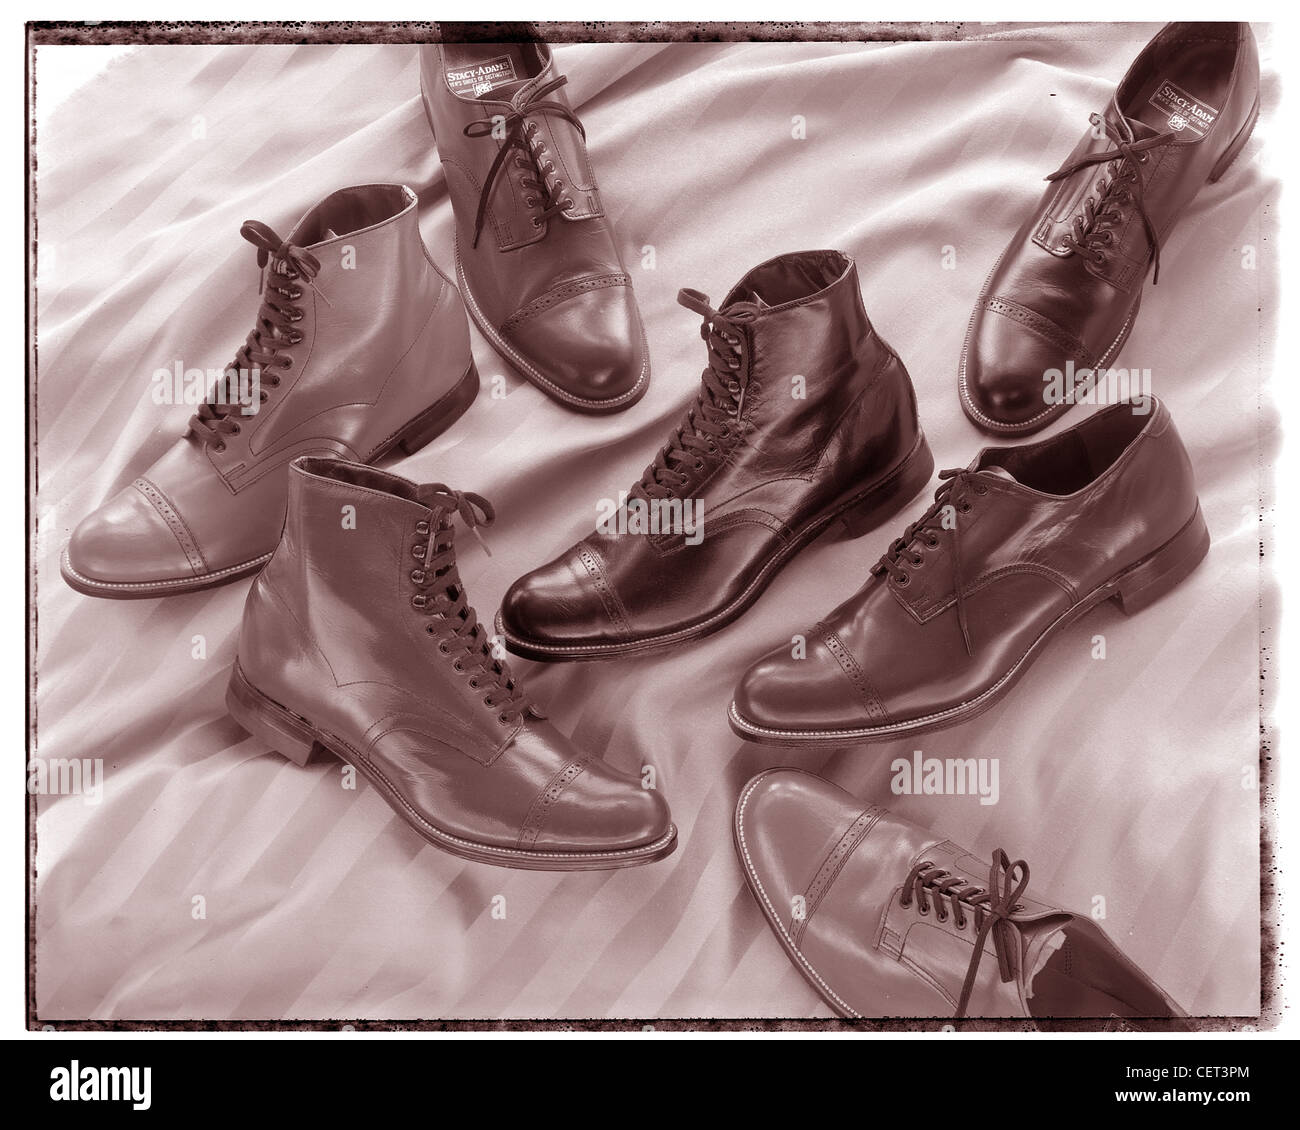 Stacey Adams Schuhe, retro, design-Stil Gruppe Stilleben auf materiellen Hintergrund.  Stiefel, Schuhe, Schnürsenkel klassischen horizontalen sepia Stockfoto